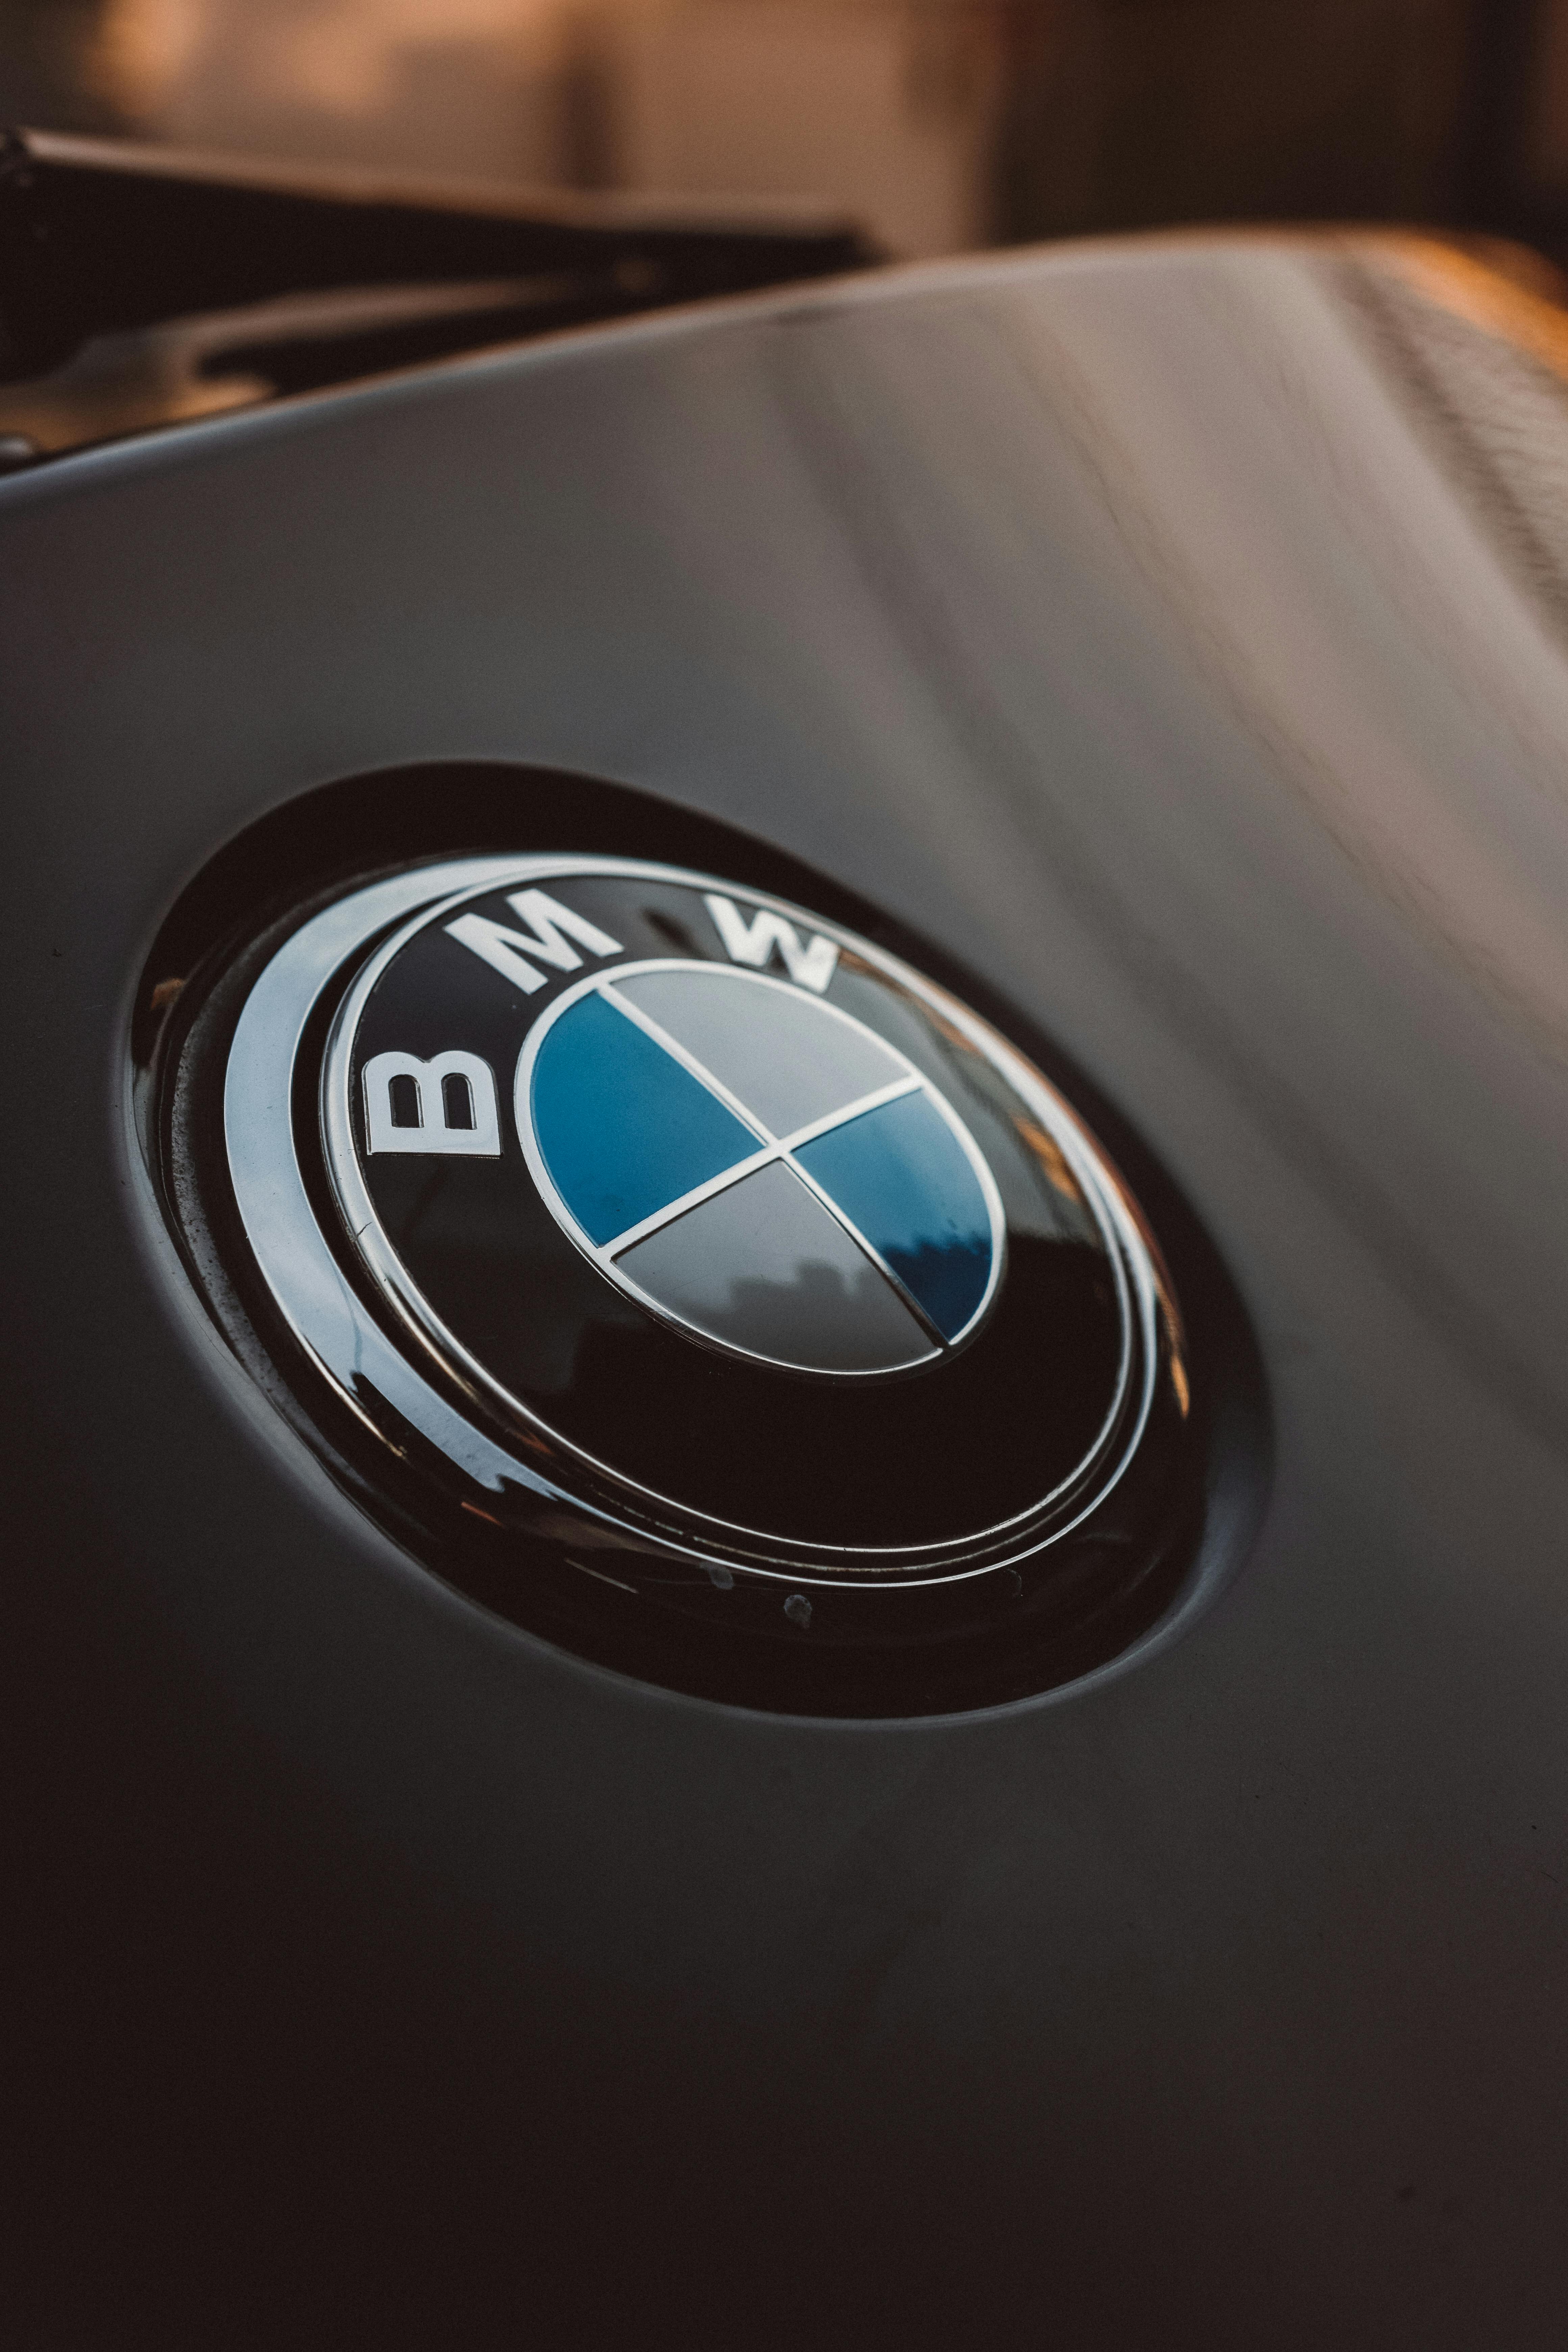 BMW Wallpapers: Free HD Download [500+ HQ] | Unsplash